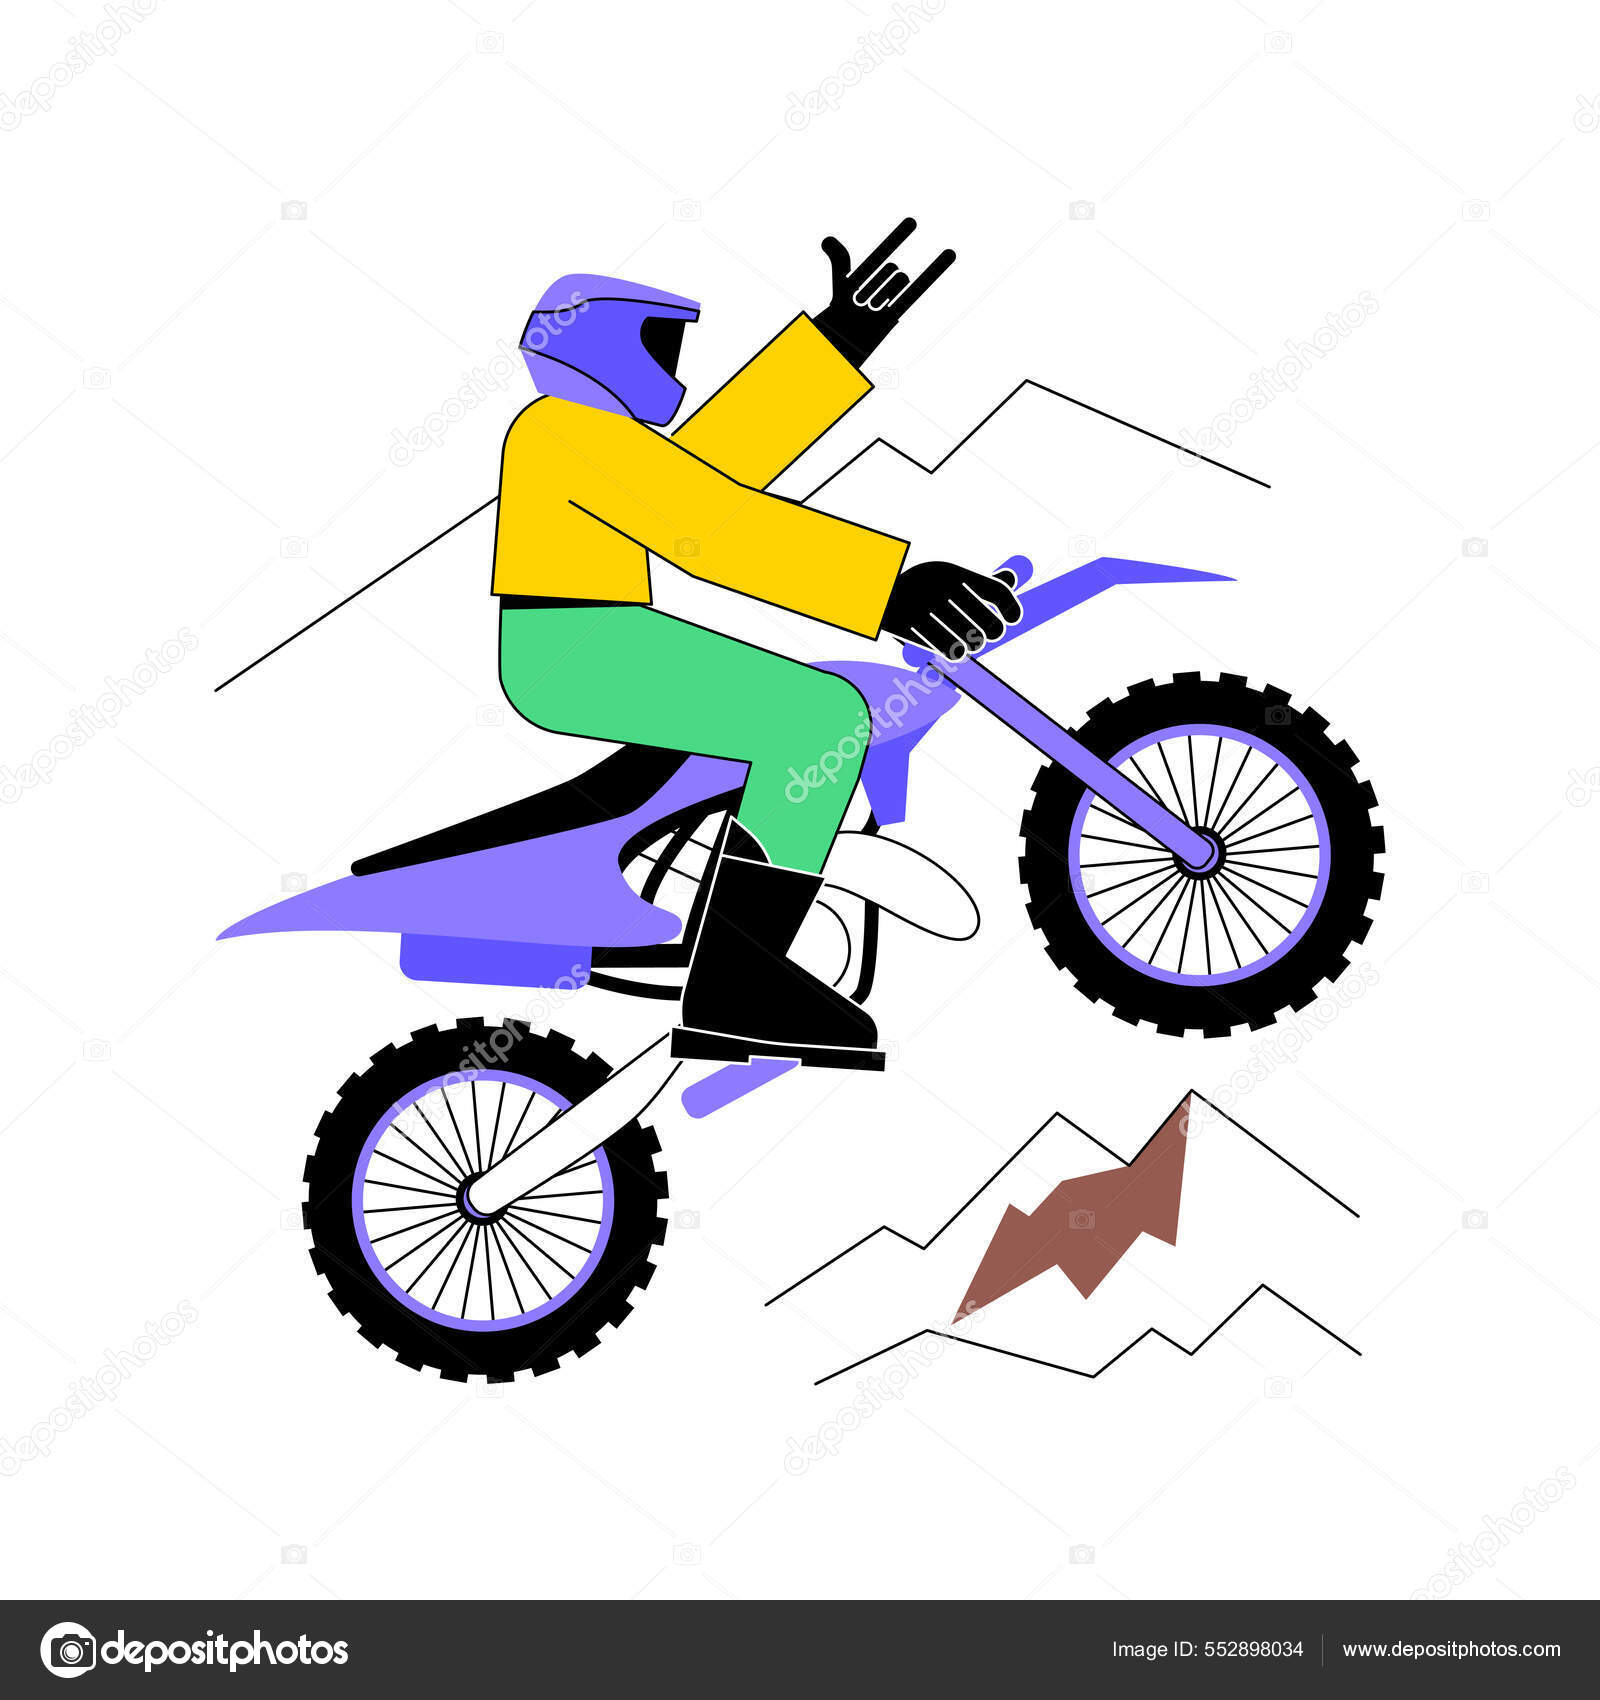 Motocross - ícones de esportes e competição grátis